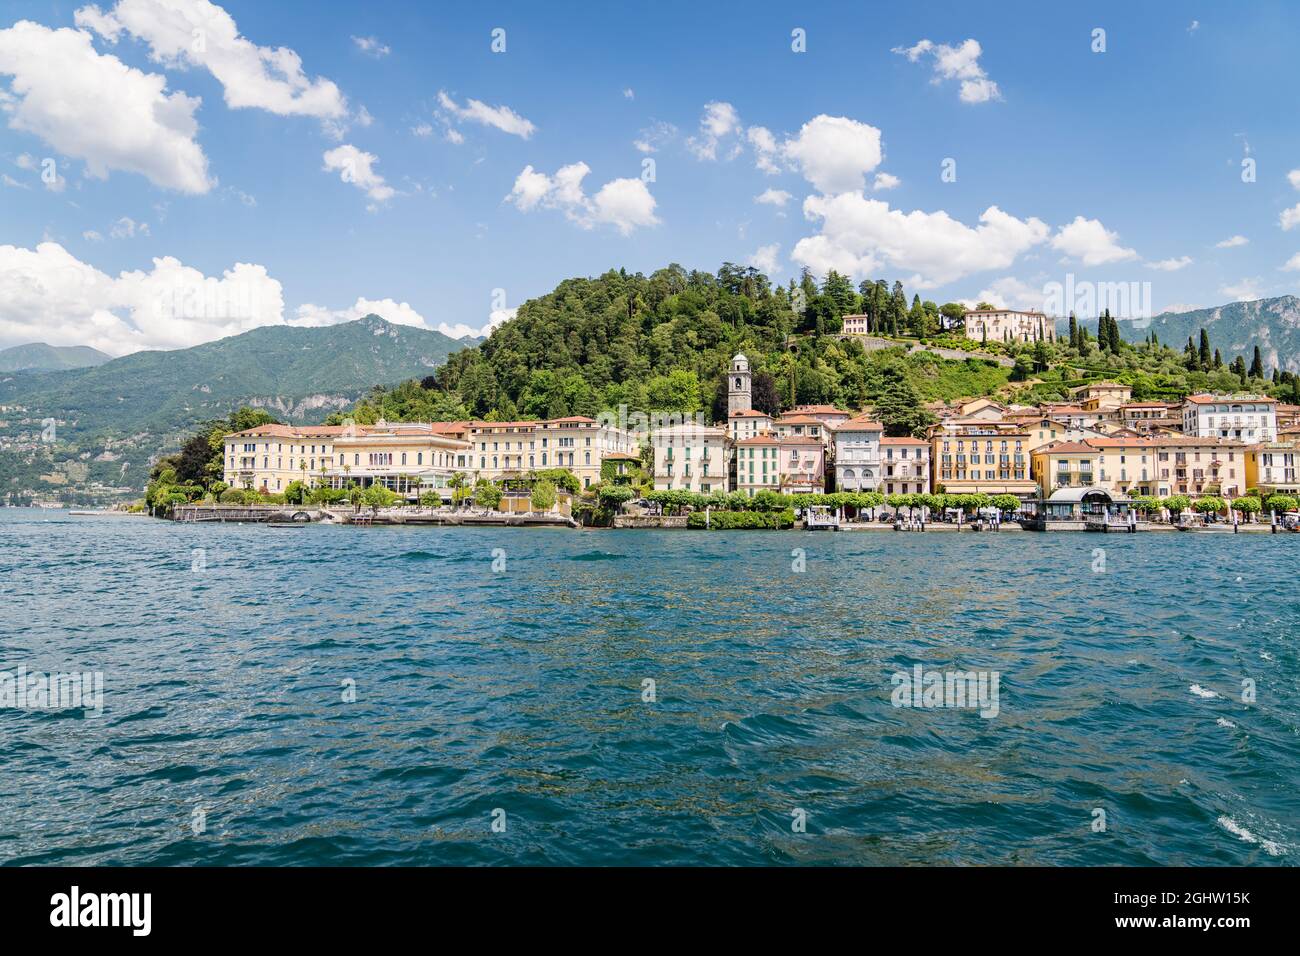 Vista del pueblo de Bellagio desde el lago Como, Lombardía, Italia Foto de stock